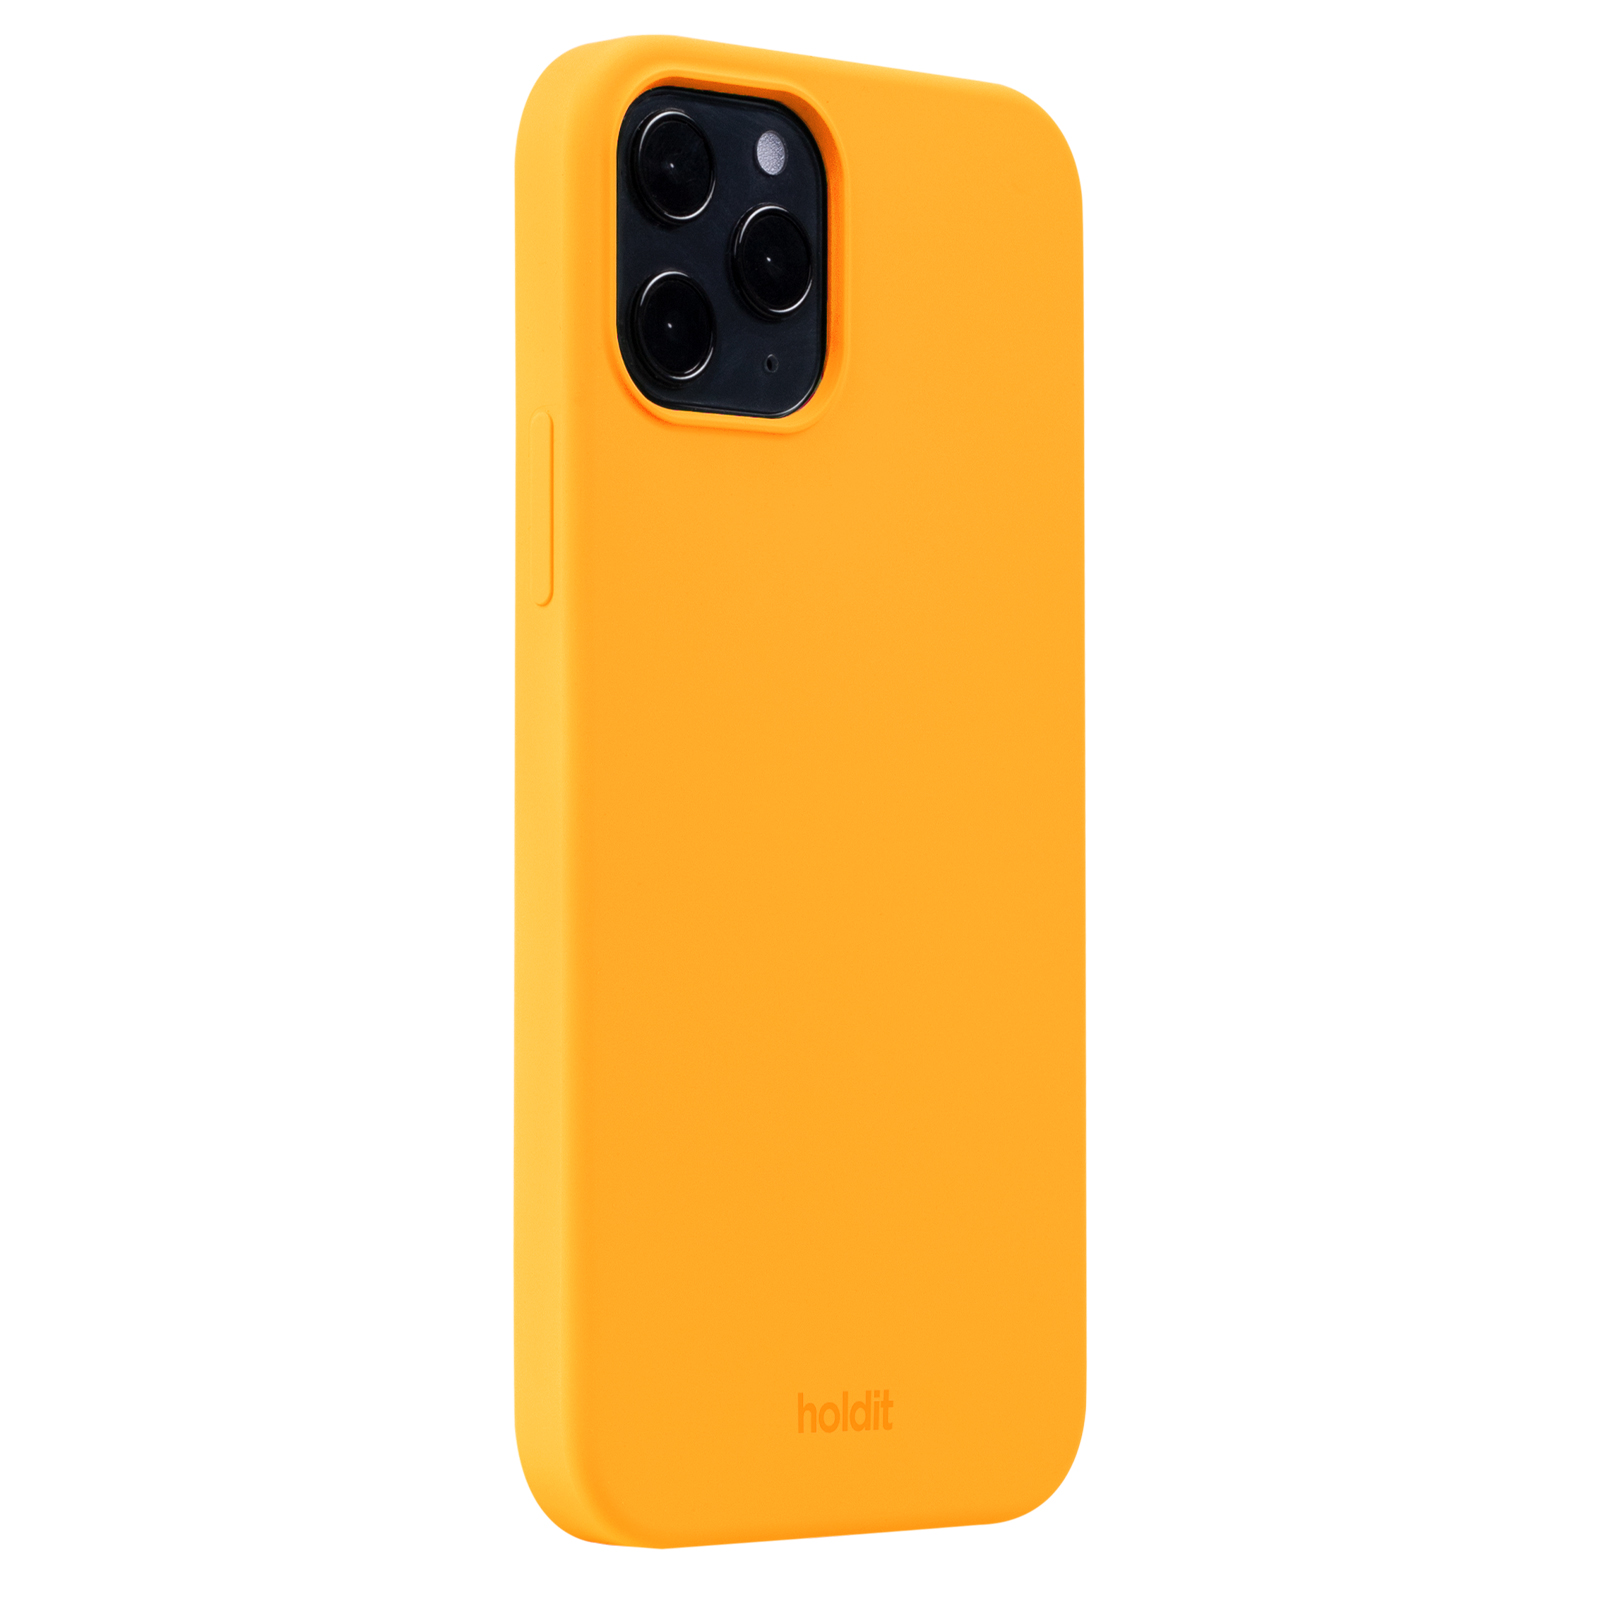 Гръб Holdit Silicone Case за iPhone 12/12 Pro - Orange Juice